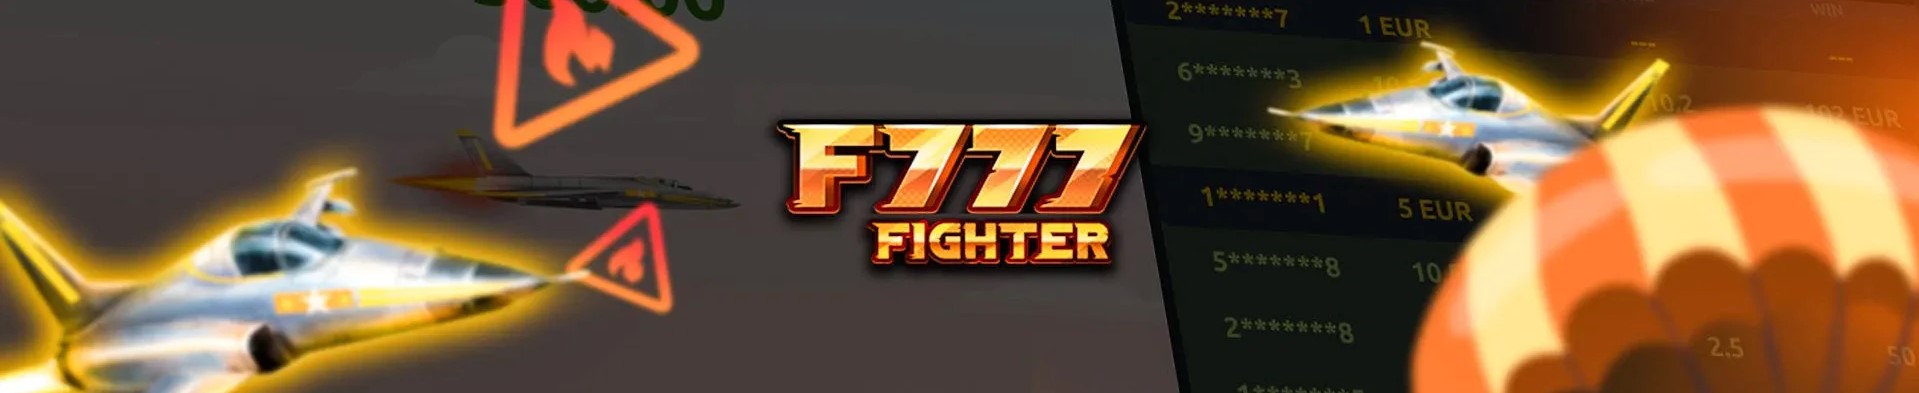 بازی F777 fighter.